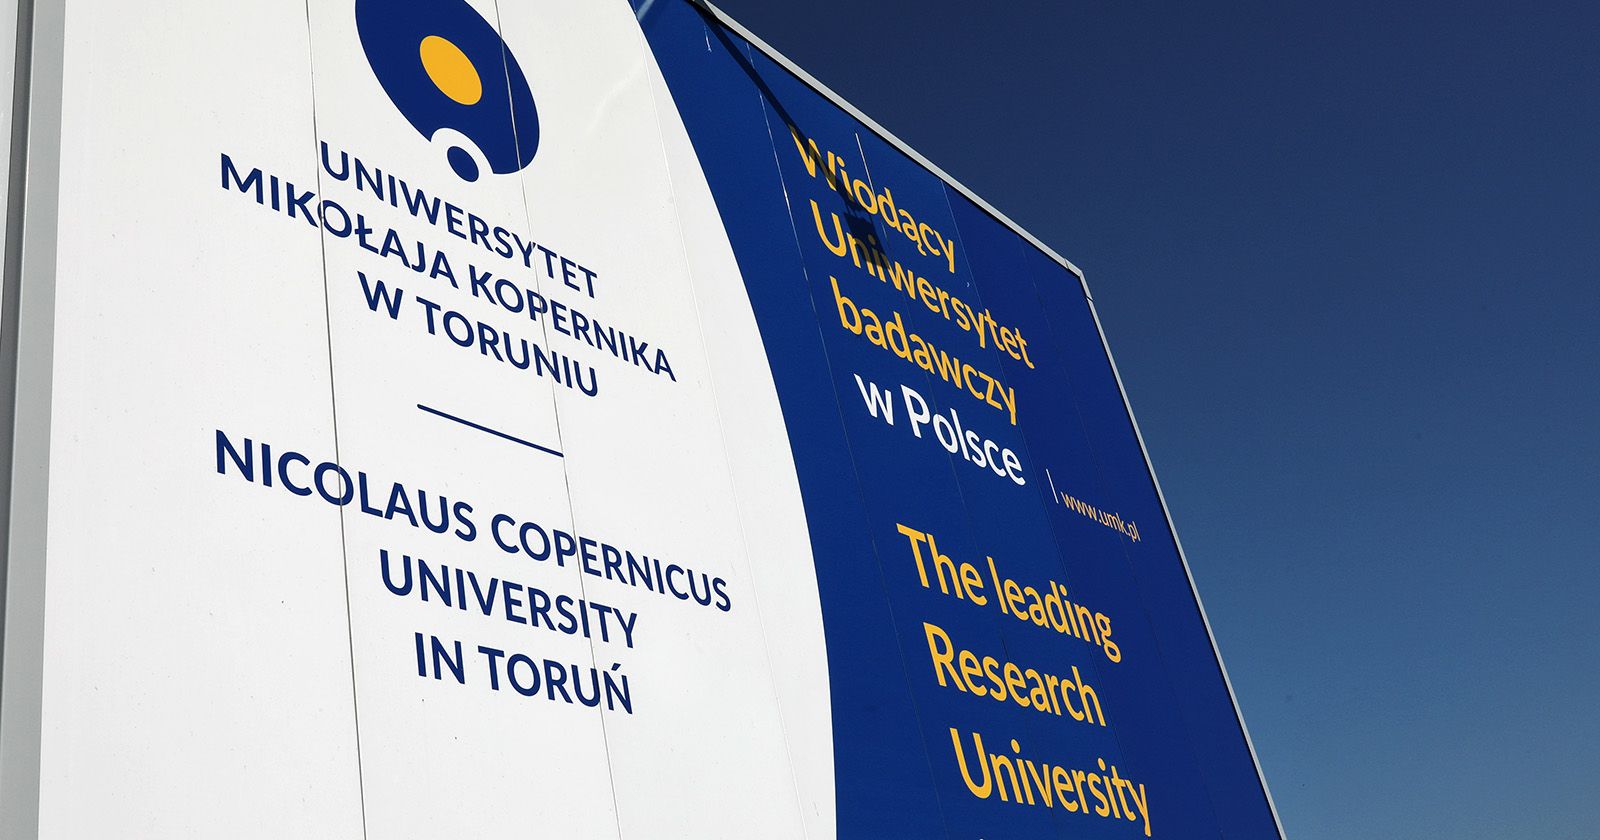  Tablica z logo UMK i napisem "Wiodący Uniwersytet badawczy"